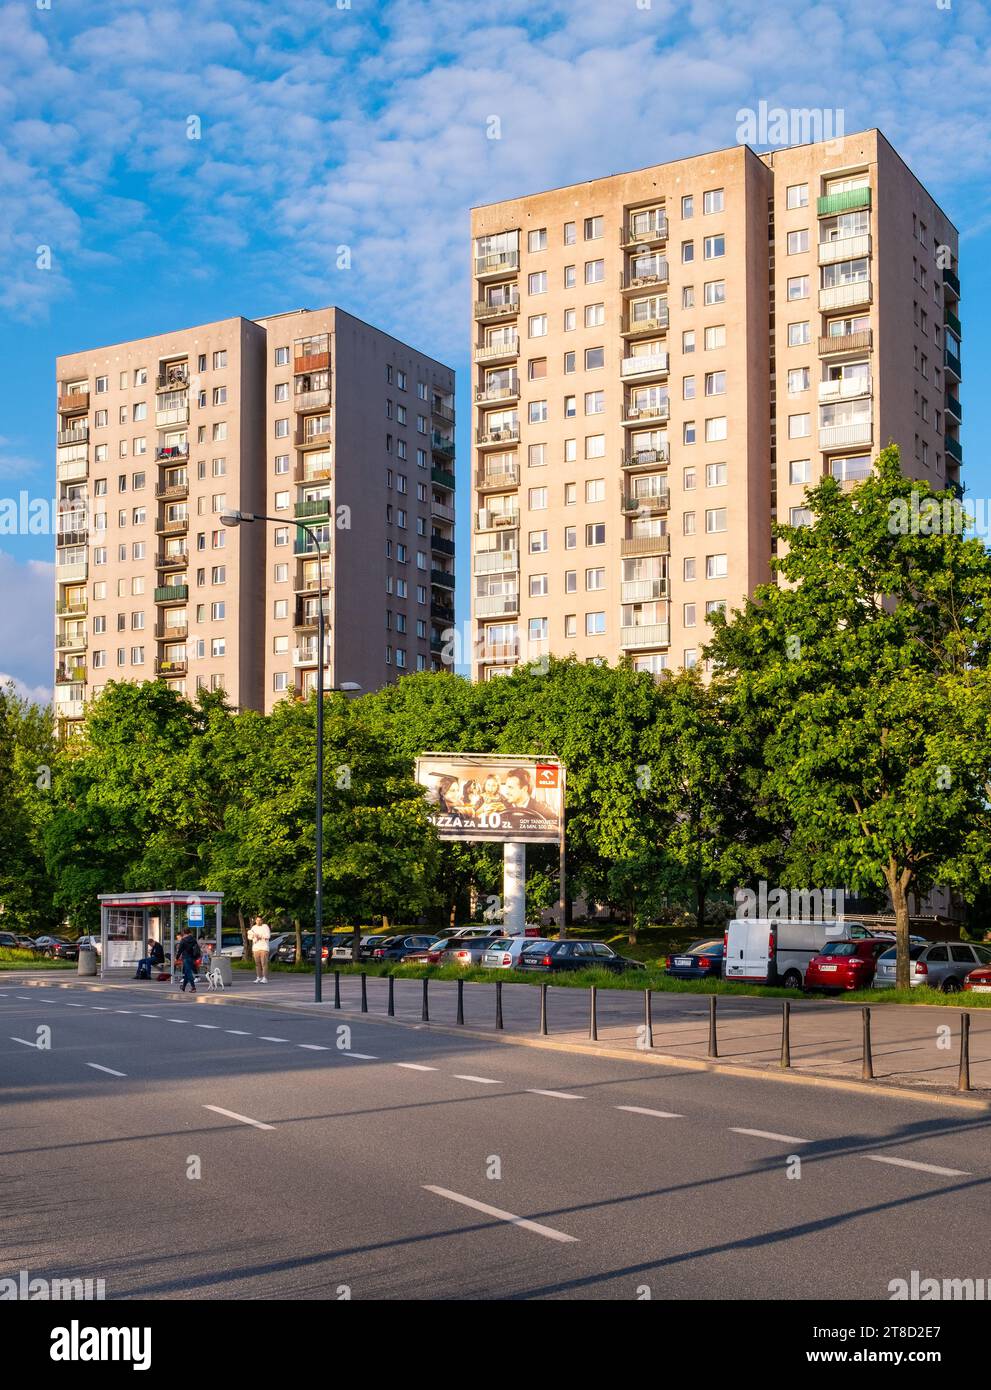 Varsavia, Polonia - 28 maggio 2021: Grandi edifici residenziali comunisti a Gandhi, Cynamonowa e Szolc Rogozinskiego nel quartiere Natolin di Ursynow Foto Stock